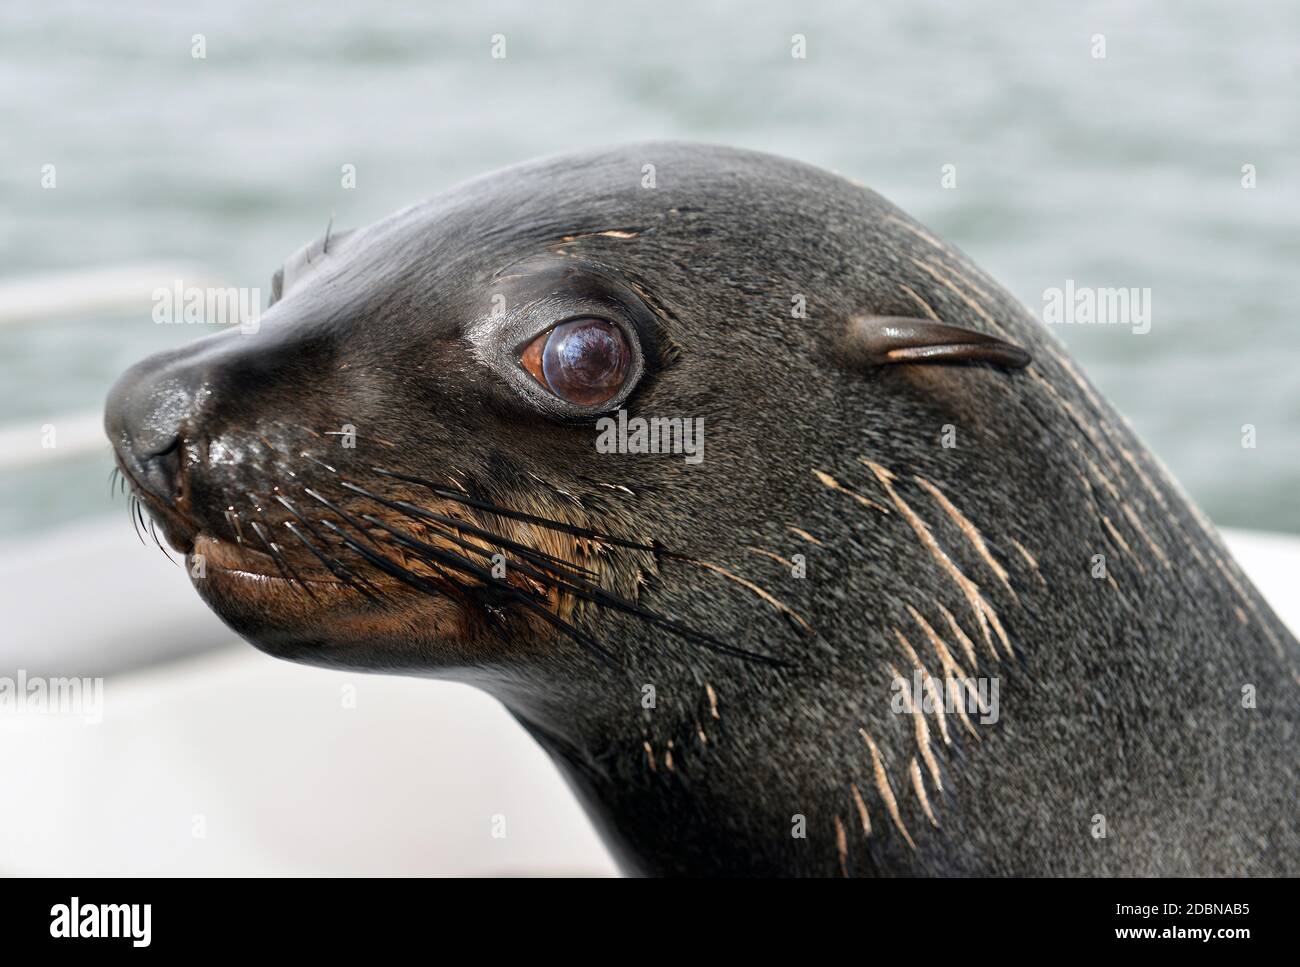 Seal at Walvis Bay, Namibia Stock Photo